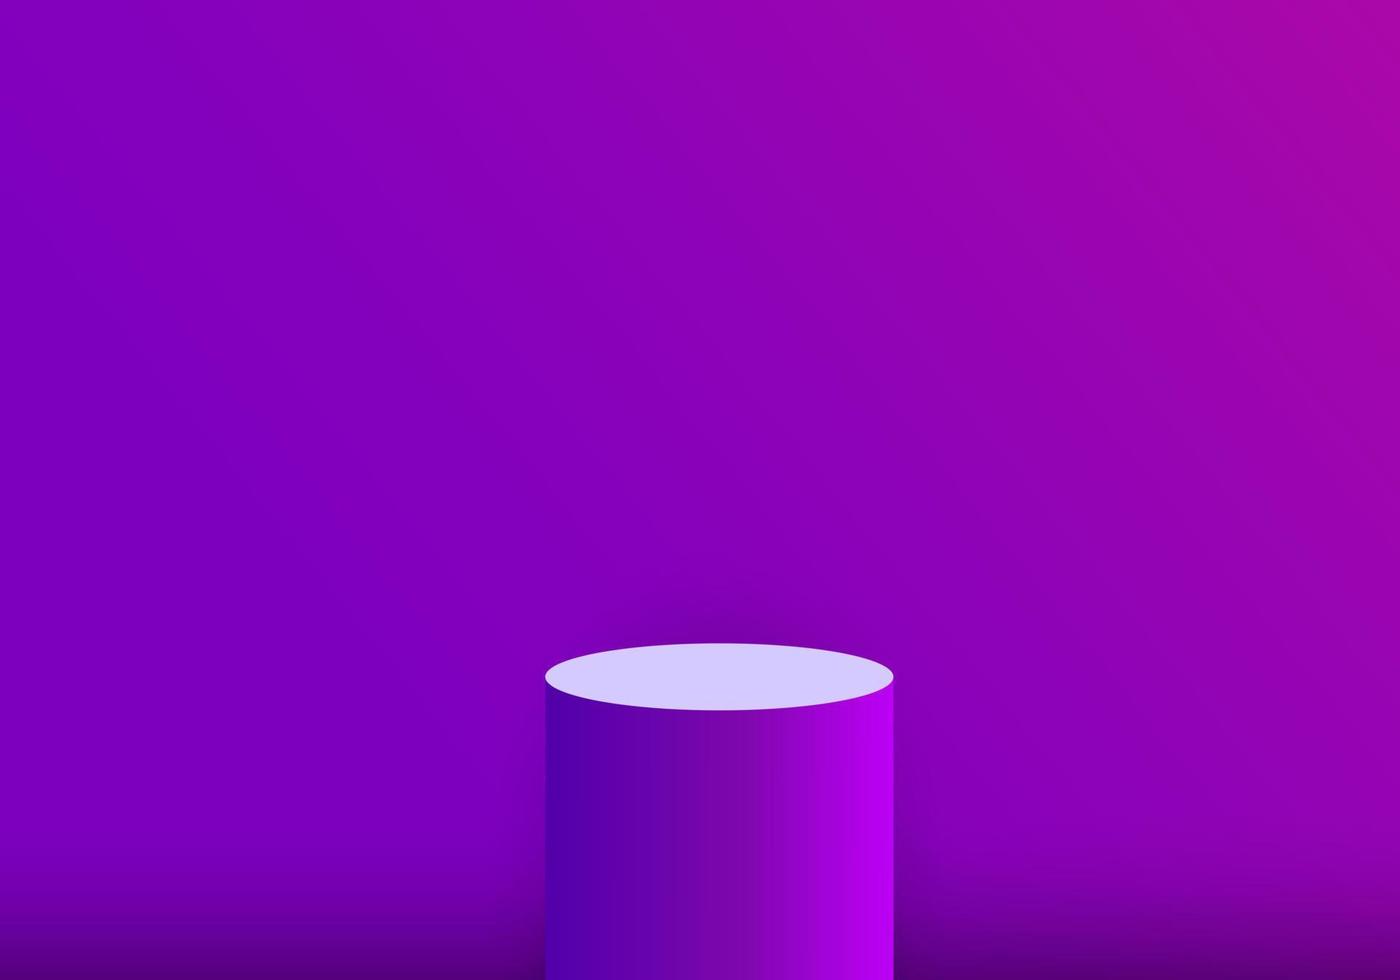 3D-Hintergrundprodukte mit violetten hohen Kugeln zum Anzeigen von Produkten. Hintergrund mit Farbverlauf, um die Unterscheidungskraft der zu platzierenden Produkte zu erhöhen. vektor